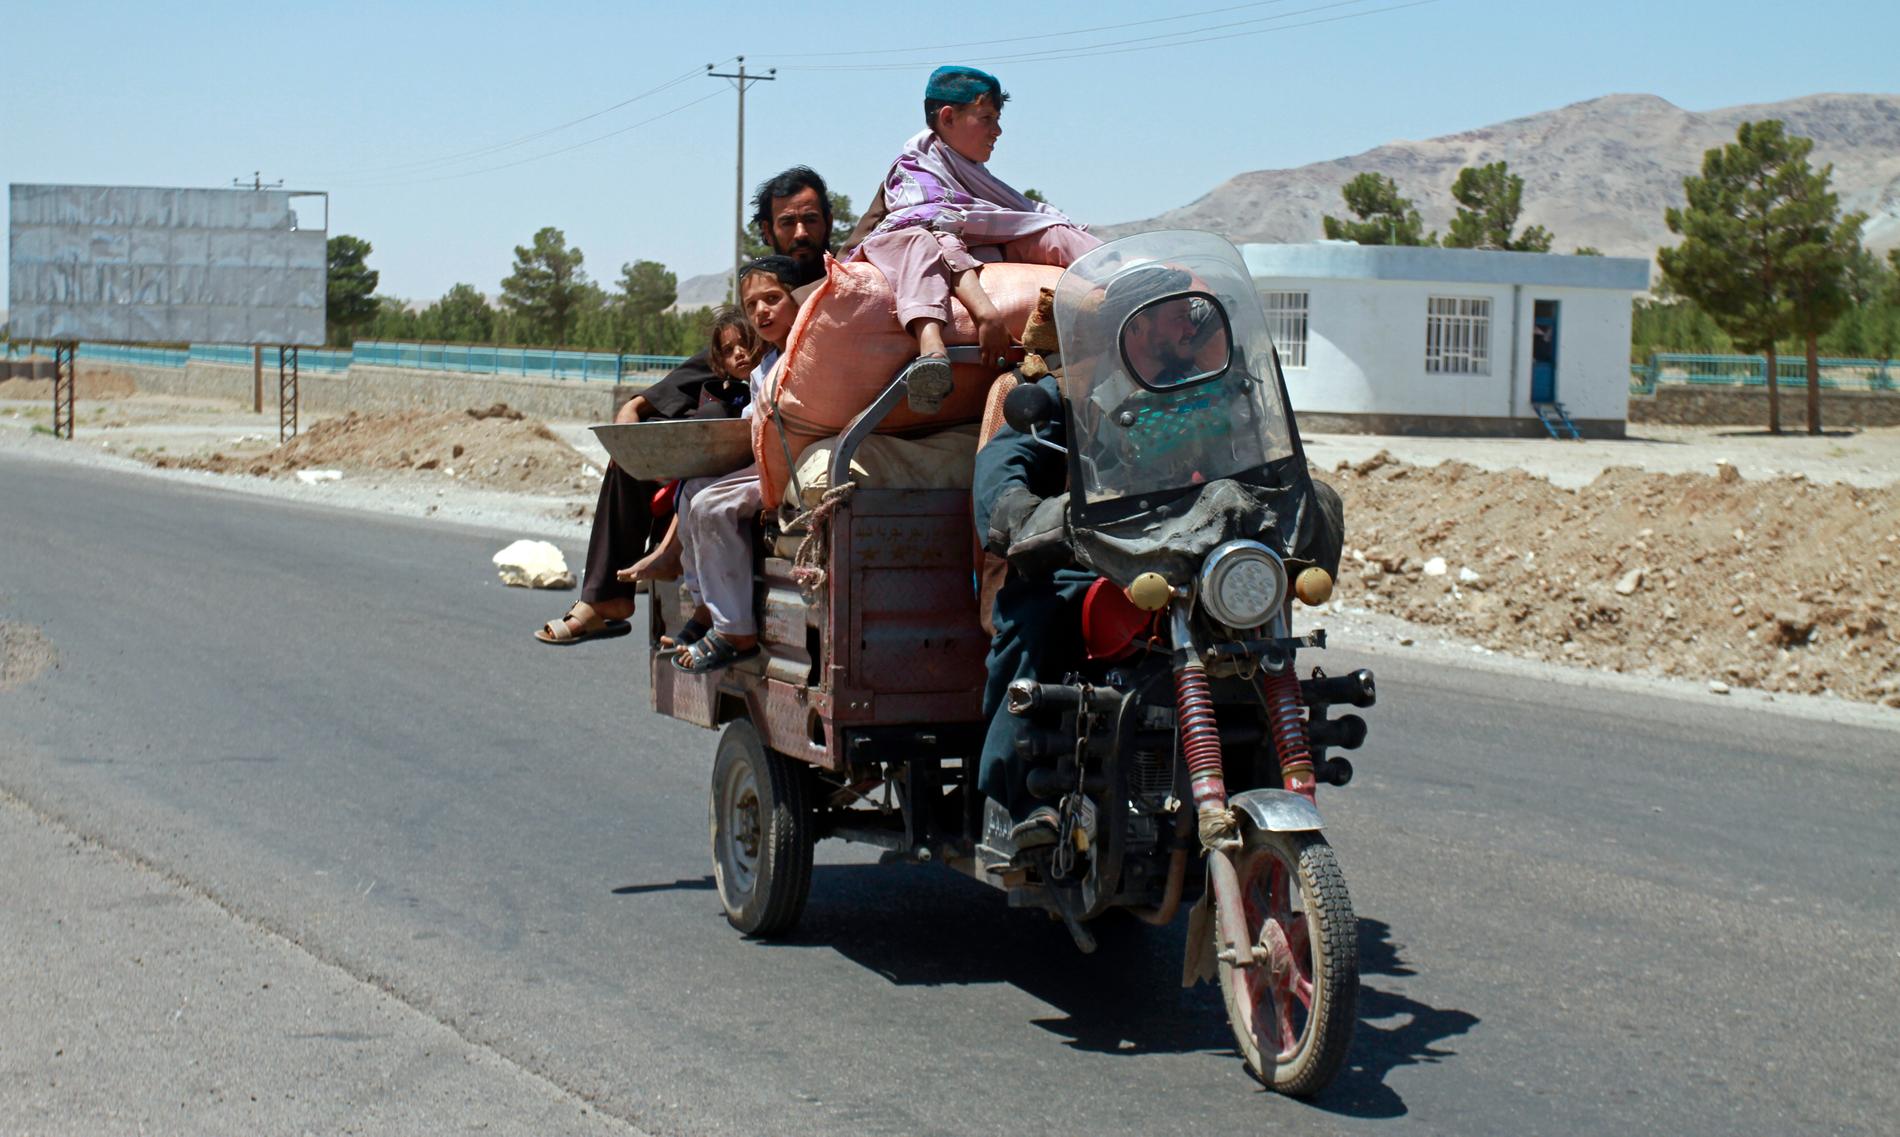  En afghansk familj flyr  för sina liv, undan striderna mellan talibaner och afghansk säkerhetspersonal. De senare tog tidigare idag tillbaka kontrollen över delar av staden Herat, 640 kilometer väster om Kabul.